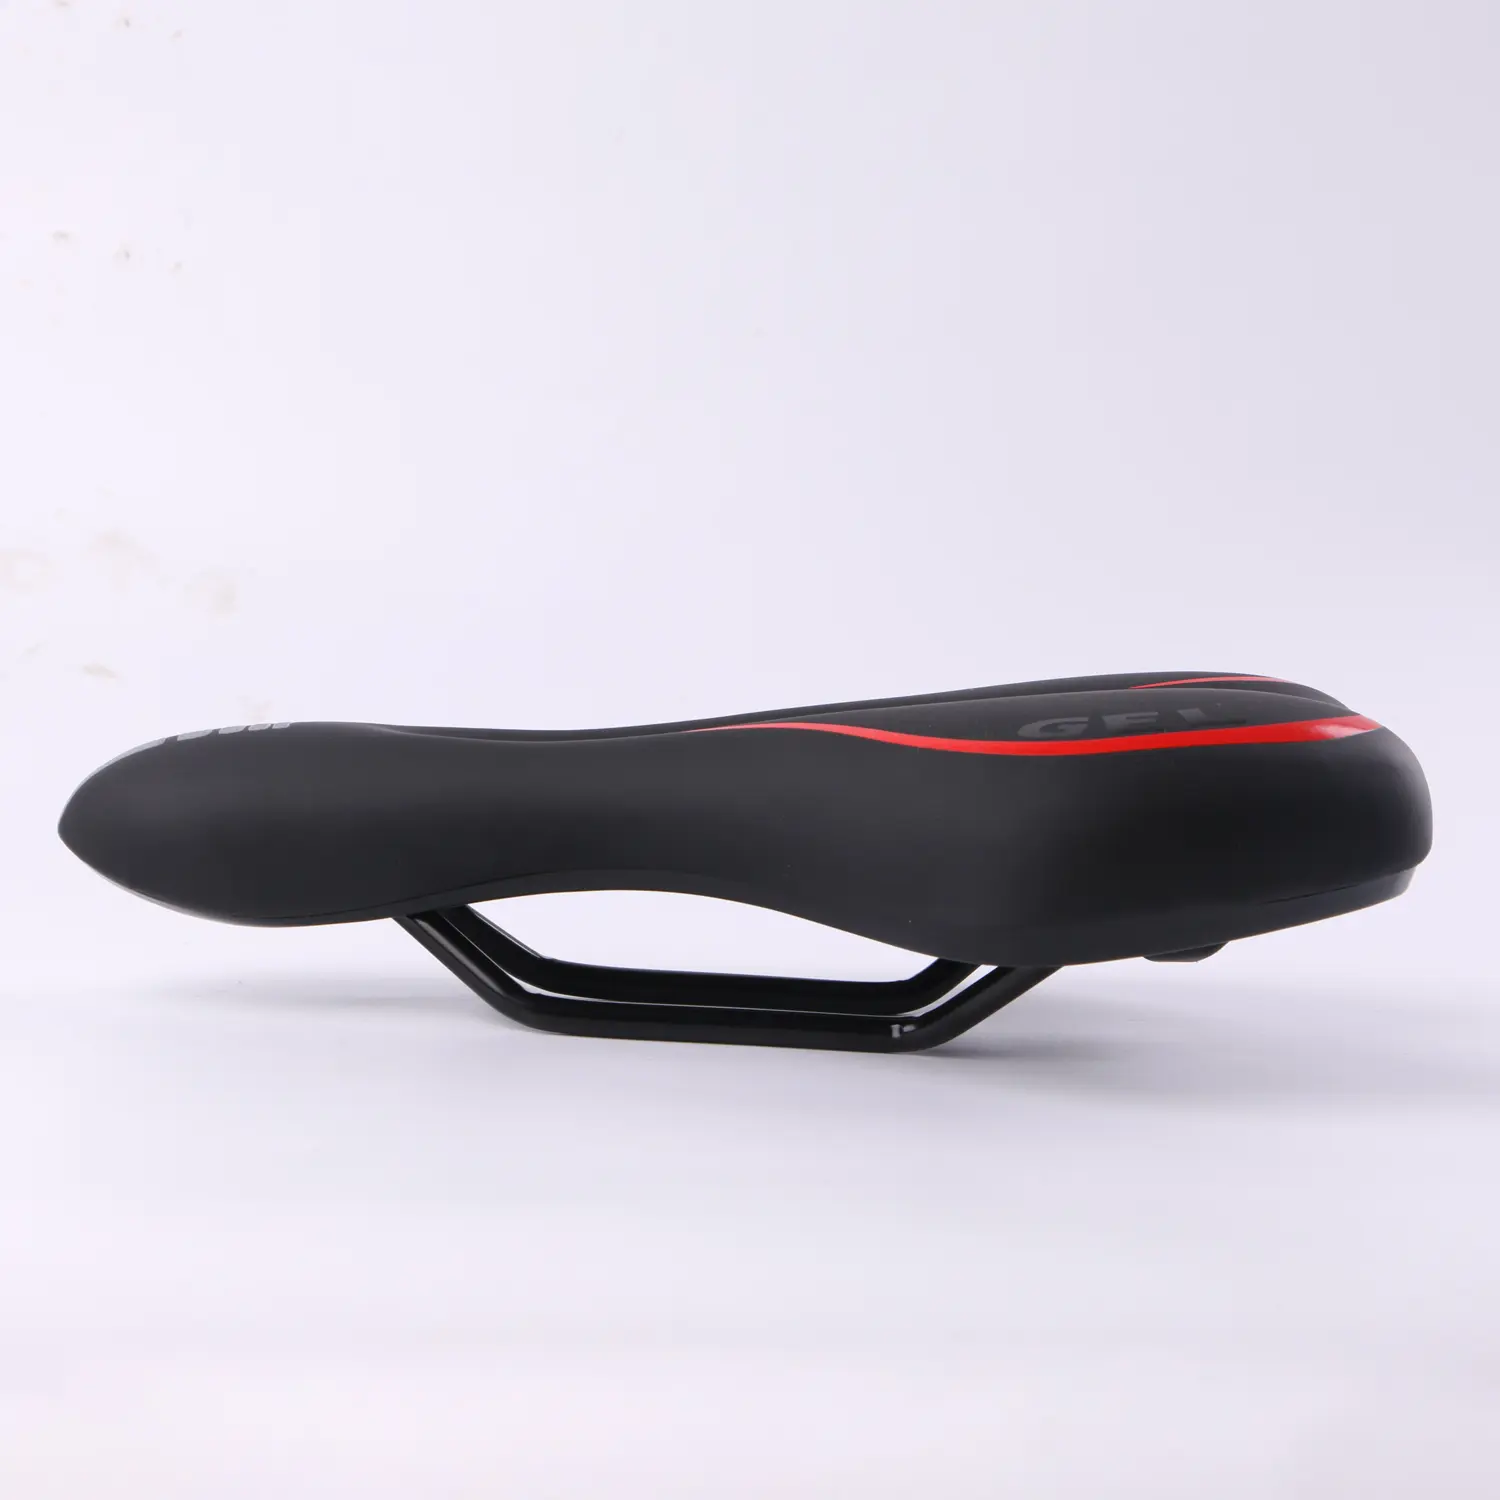 Bicikli nyereg, kerékpár ülés fekete-piros (6500-RED)